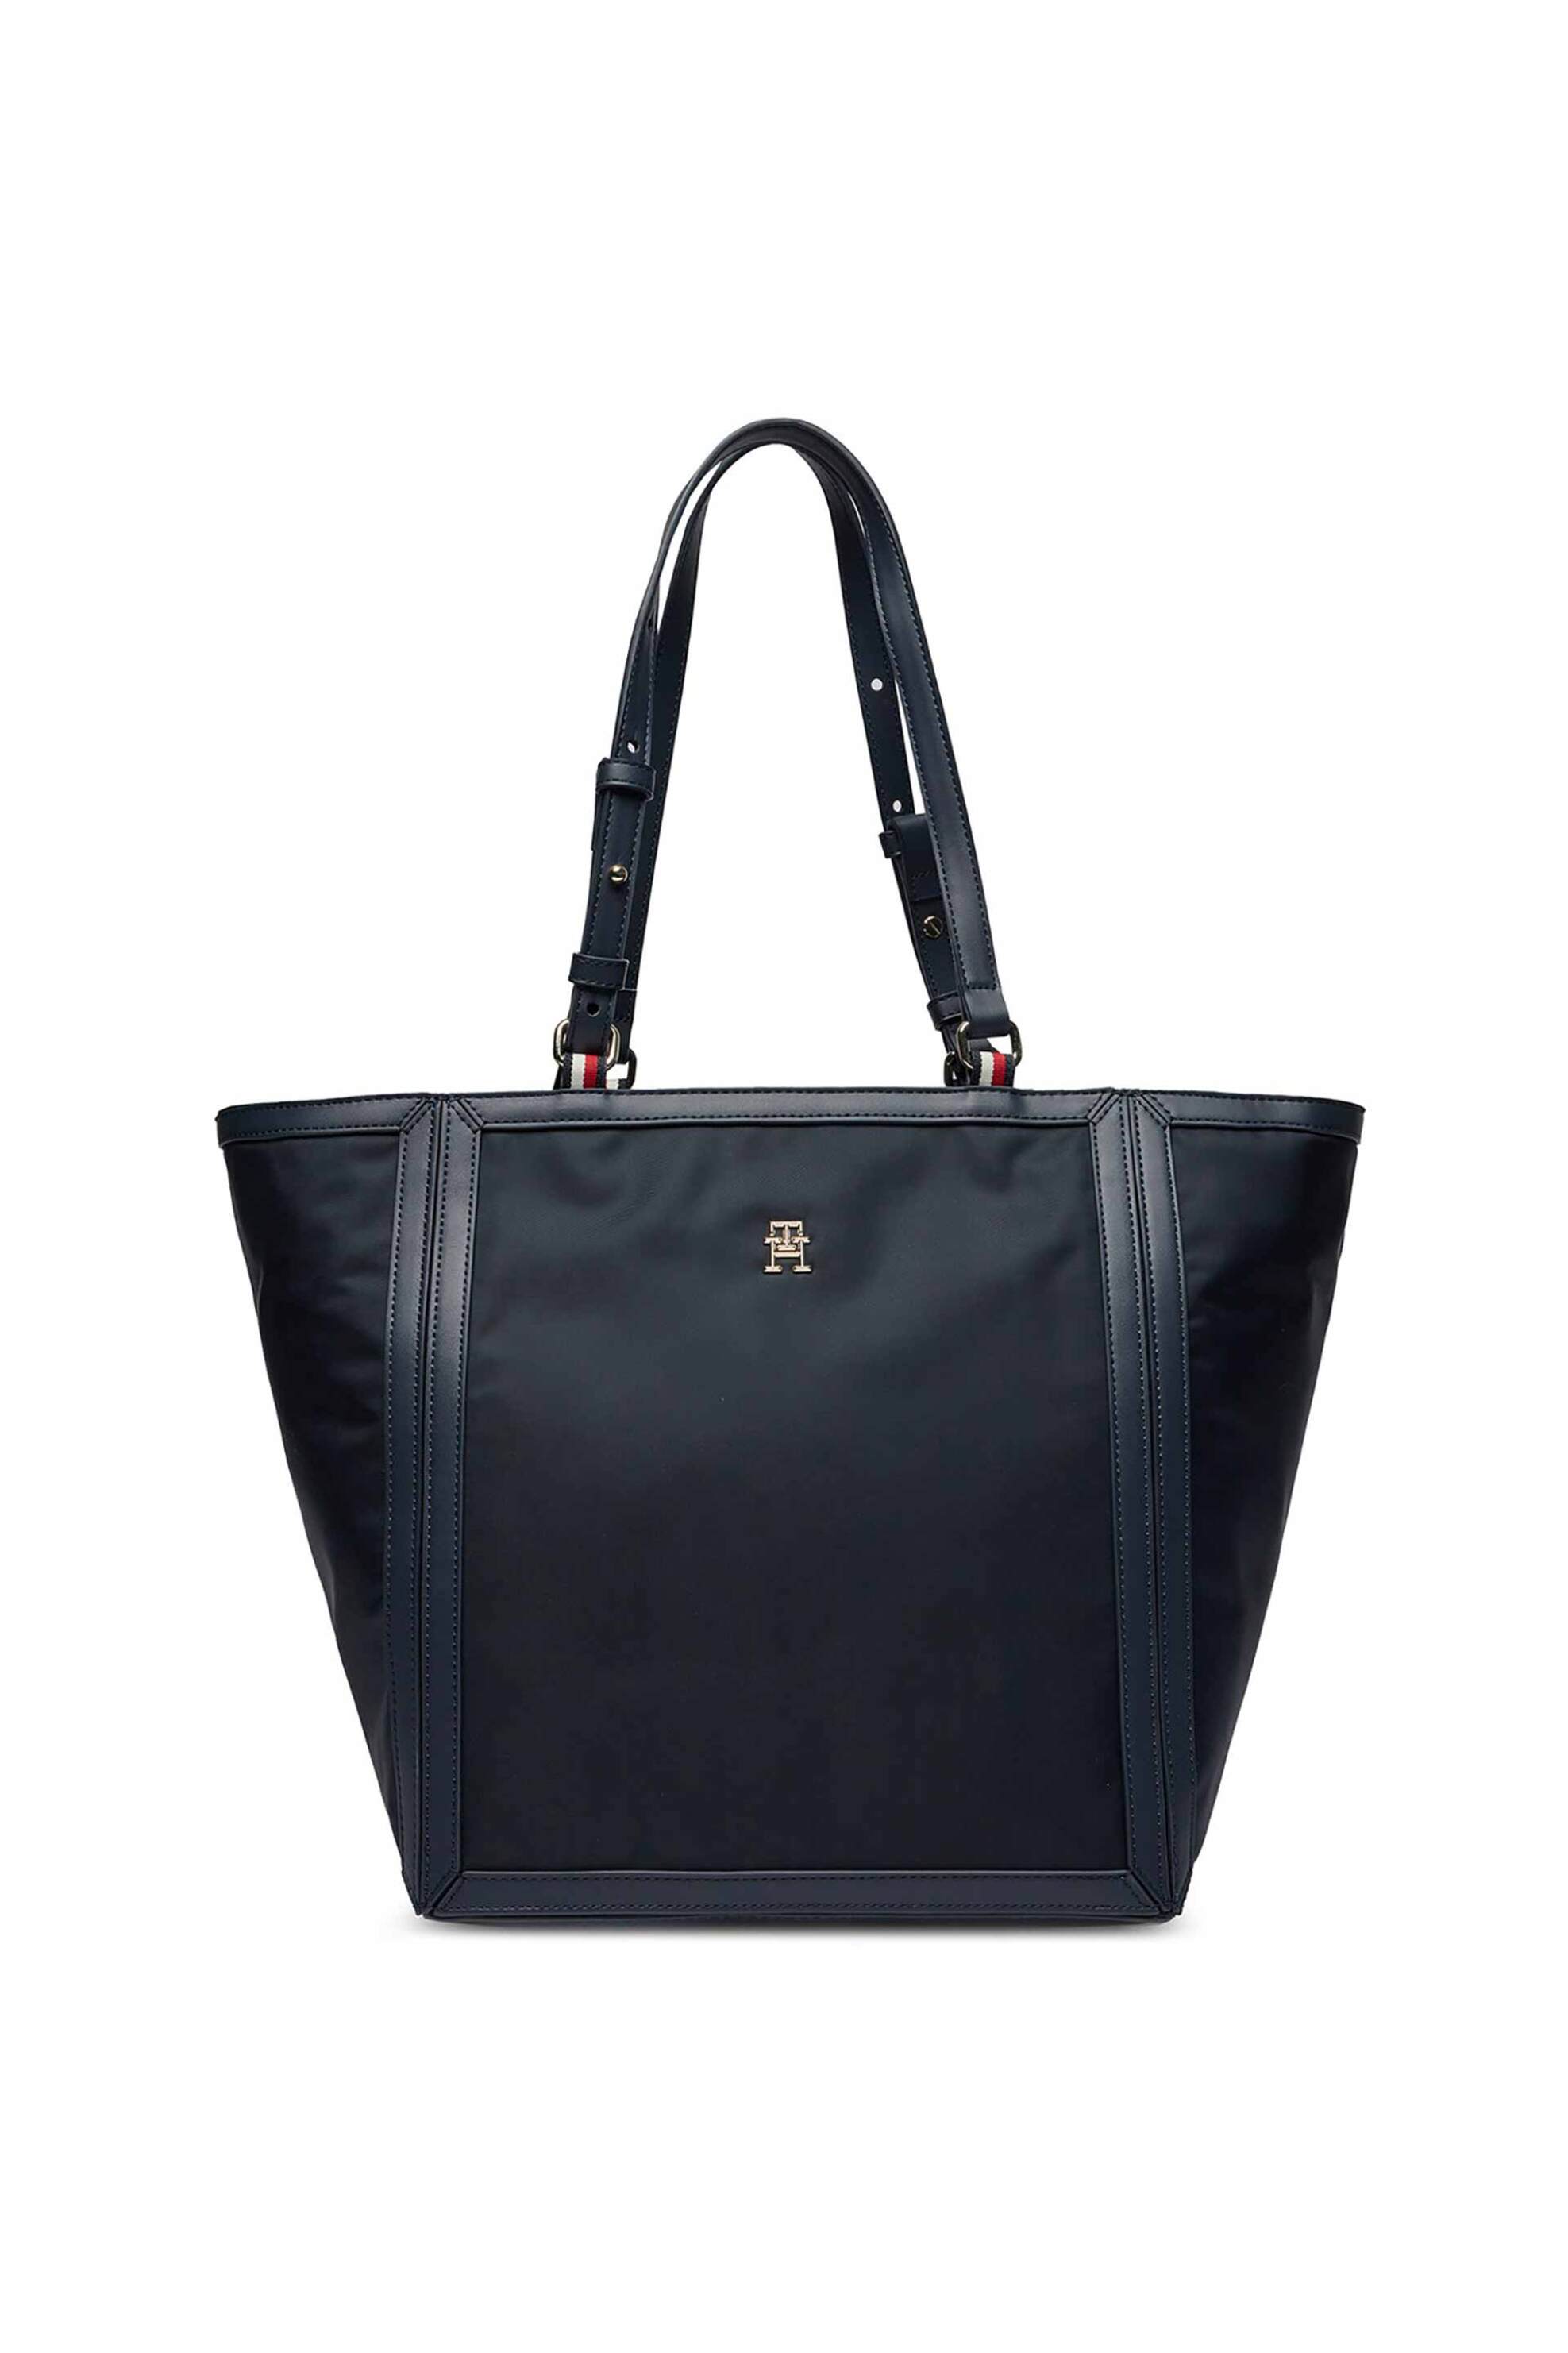 Γυναίκα > ΤΣΑΝΤΕΣ > Τσάντες Ώμου & Shopper Bags Tommy Hilfiger γυναικεία τσάντα tote με μεταλλικό λογότυπο - AW0AW15717 Σκούρο Μπλε